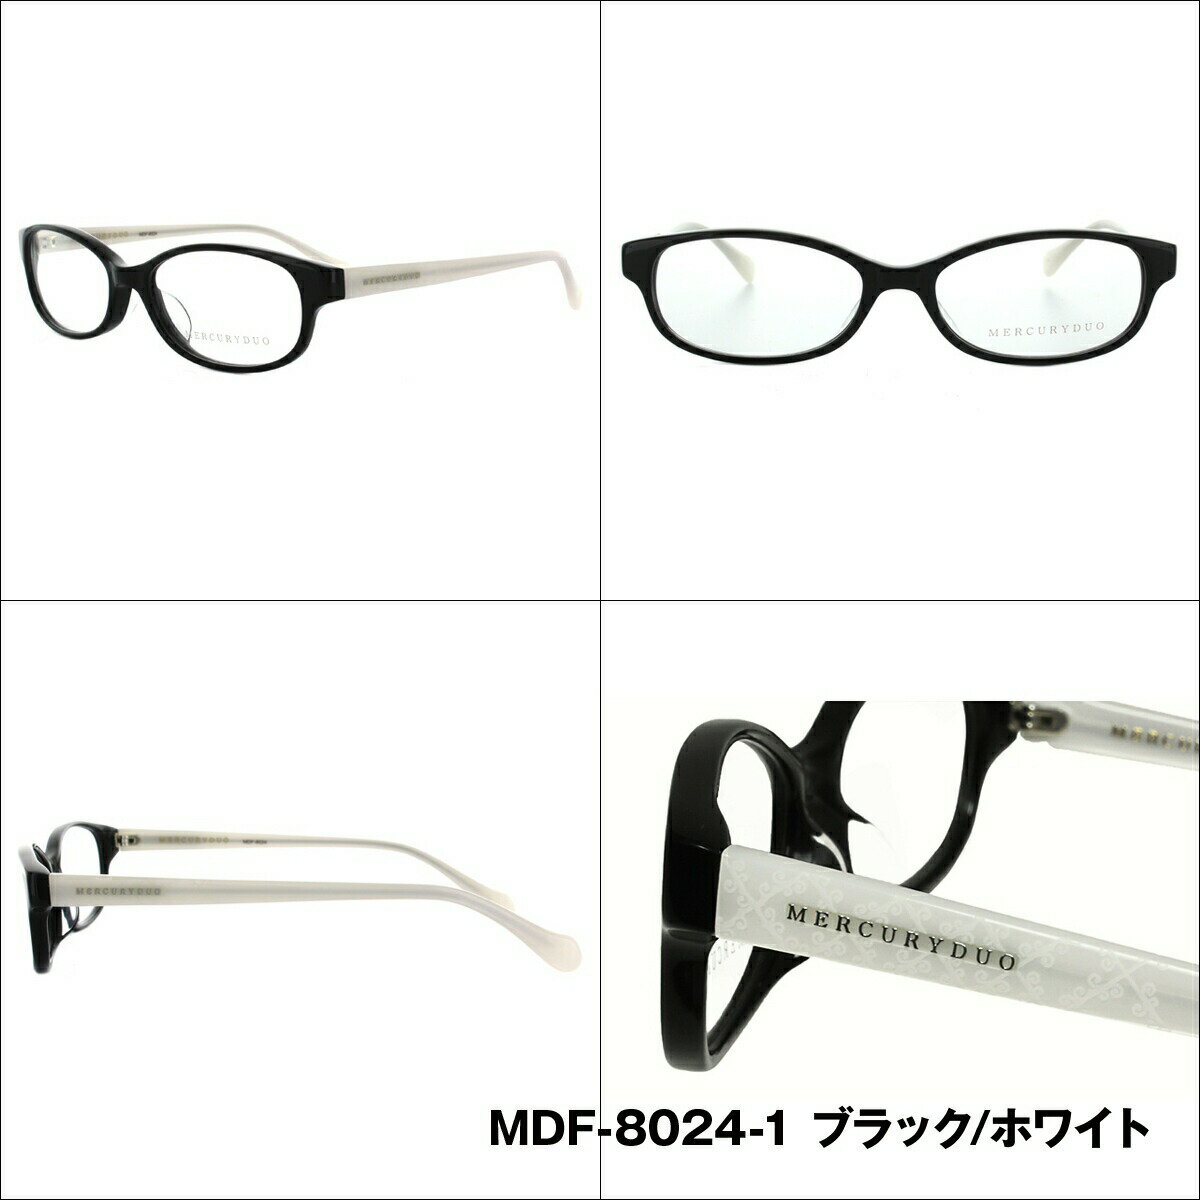 マーキュリーデュオ メガネフレーム おしゃれ老眼鏡 PC眼鏡 スマホめがね 伊達メガネ リーディンググラス 眼精疲労 MERCURYDUO 伊達 眼鏡 MDF8024 全4カラー レディース ファッションメガネ プレゼント